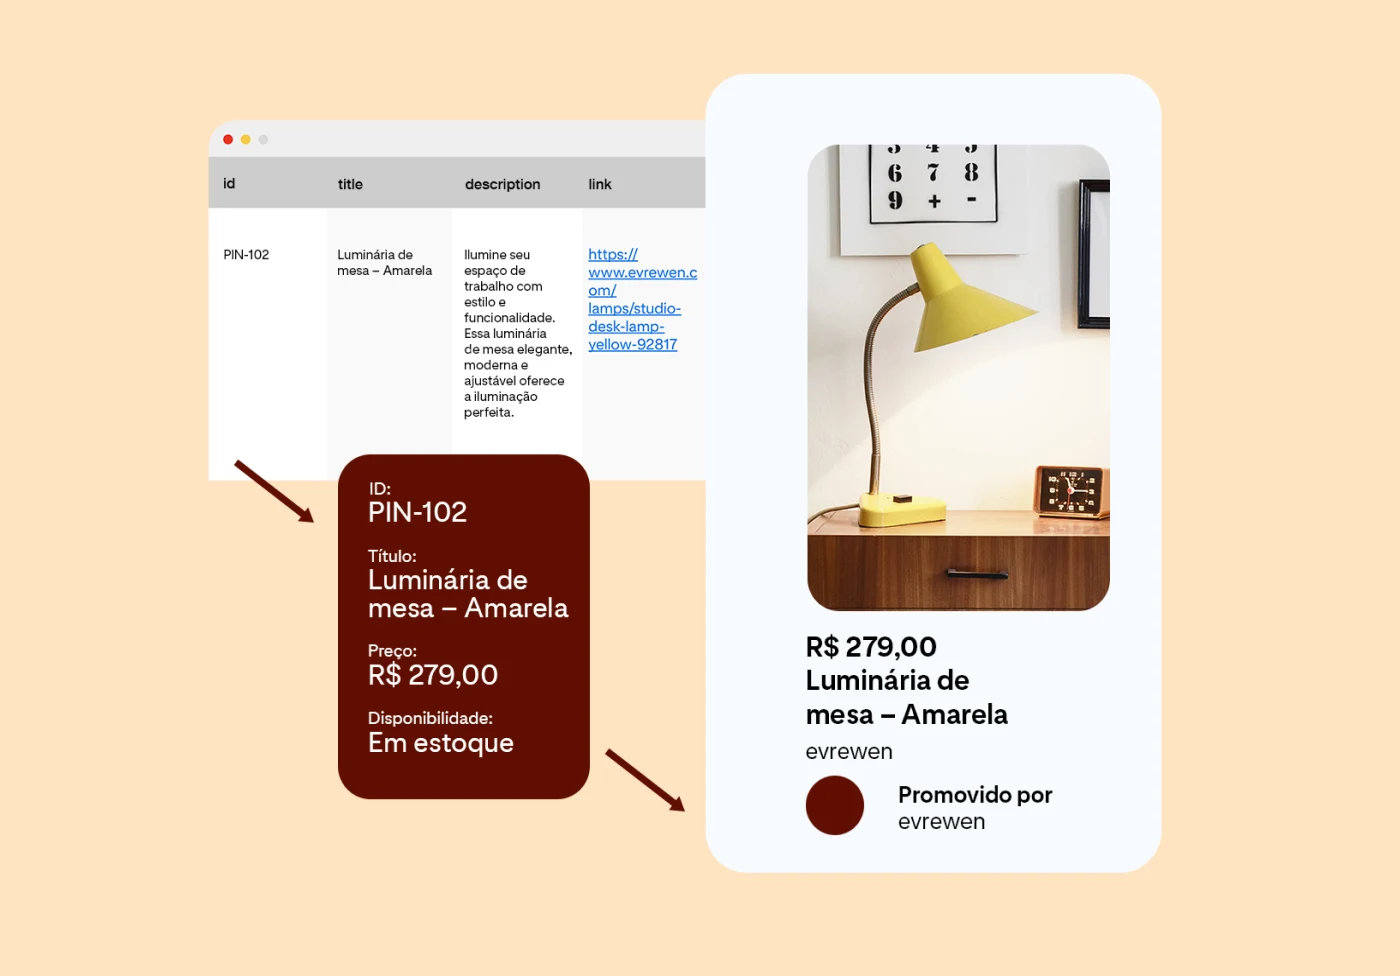 Três imagens que descrevem o processo de carregamento do catálogo de produtos: uma planilha com um único item, uma luminária de mesa amarela, informações detalhadas extraídas da planilha e o anúncio que promove o produto da Evrewen.